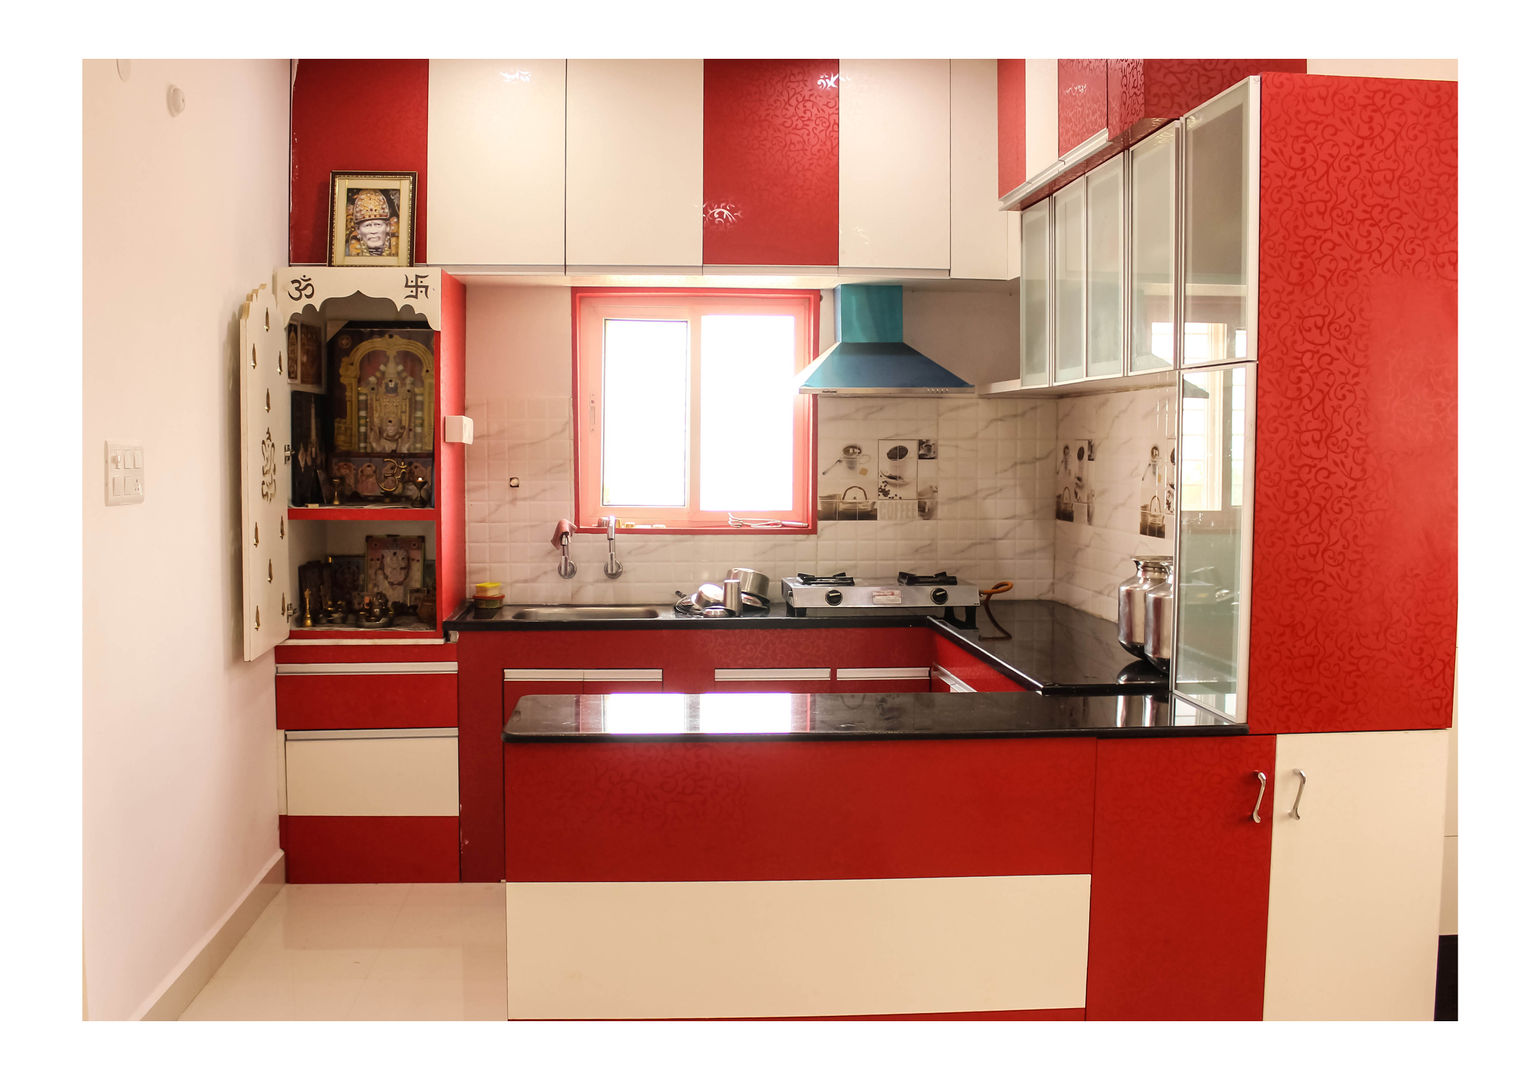 2 Bedroom Flat at Manikonda, Happy Homes Designers Happy Homes Designers Cocinas de estilo moderno Estanterías y gavetas